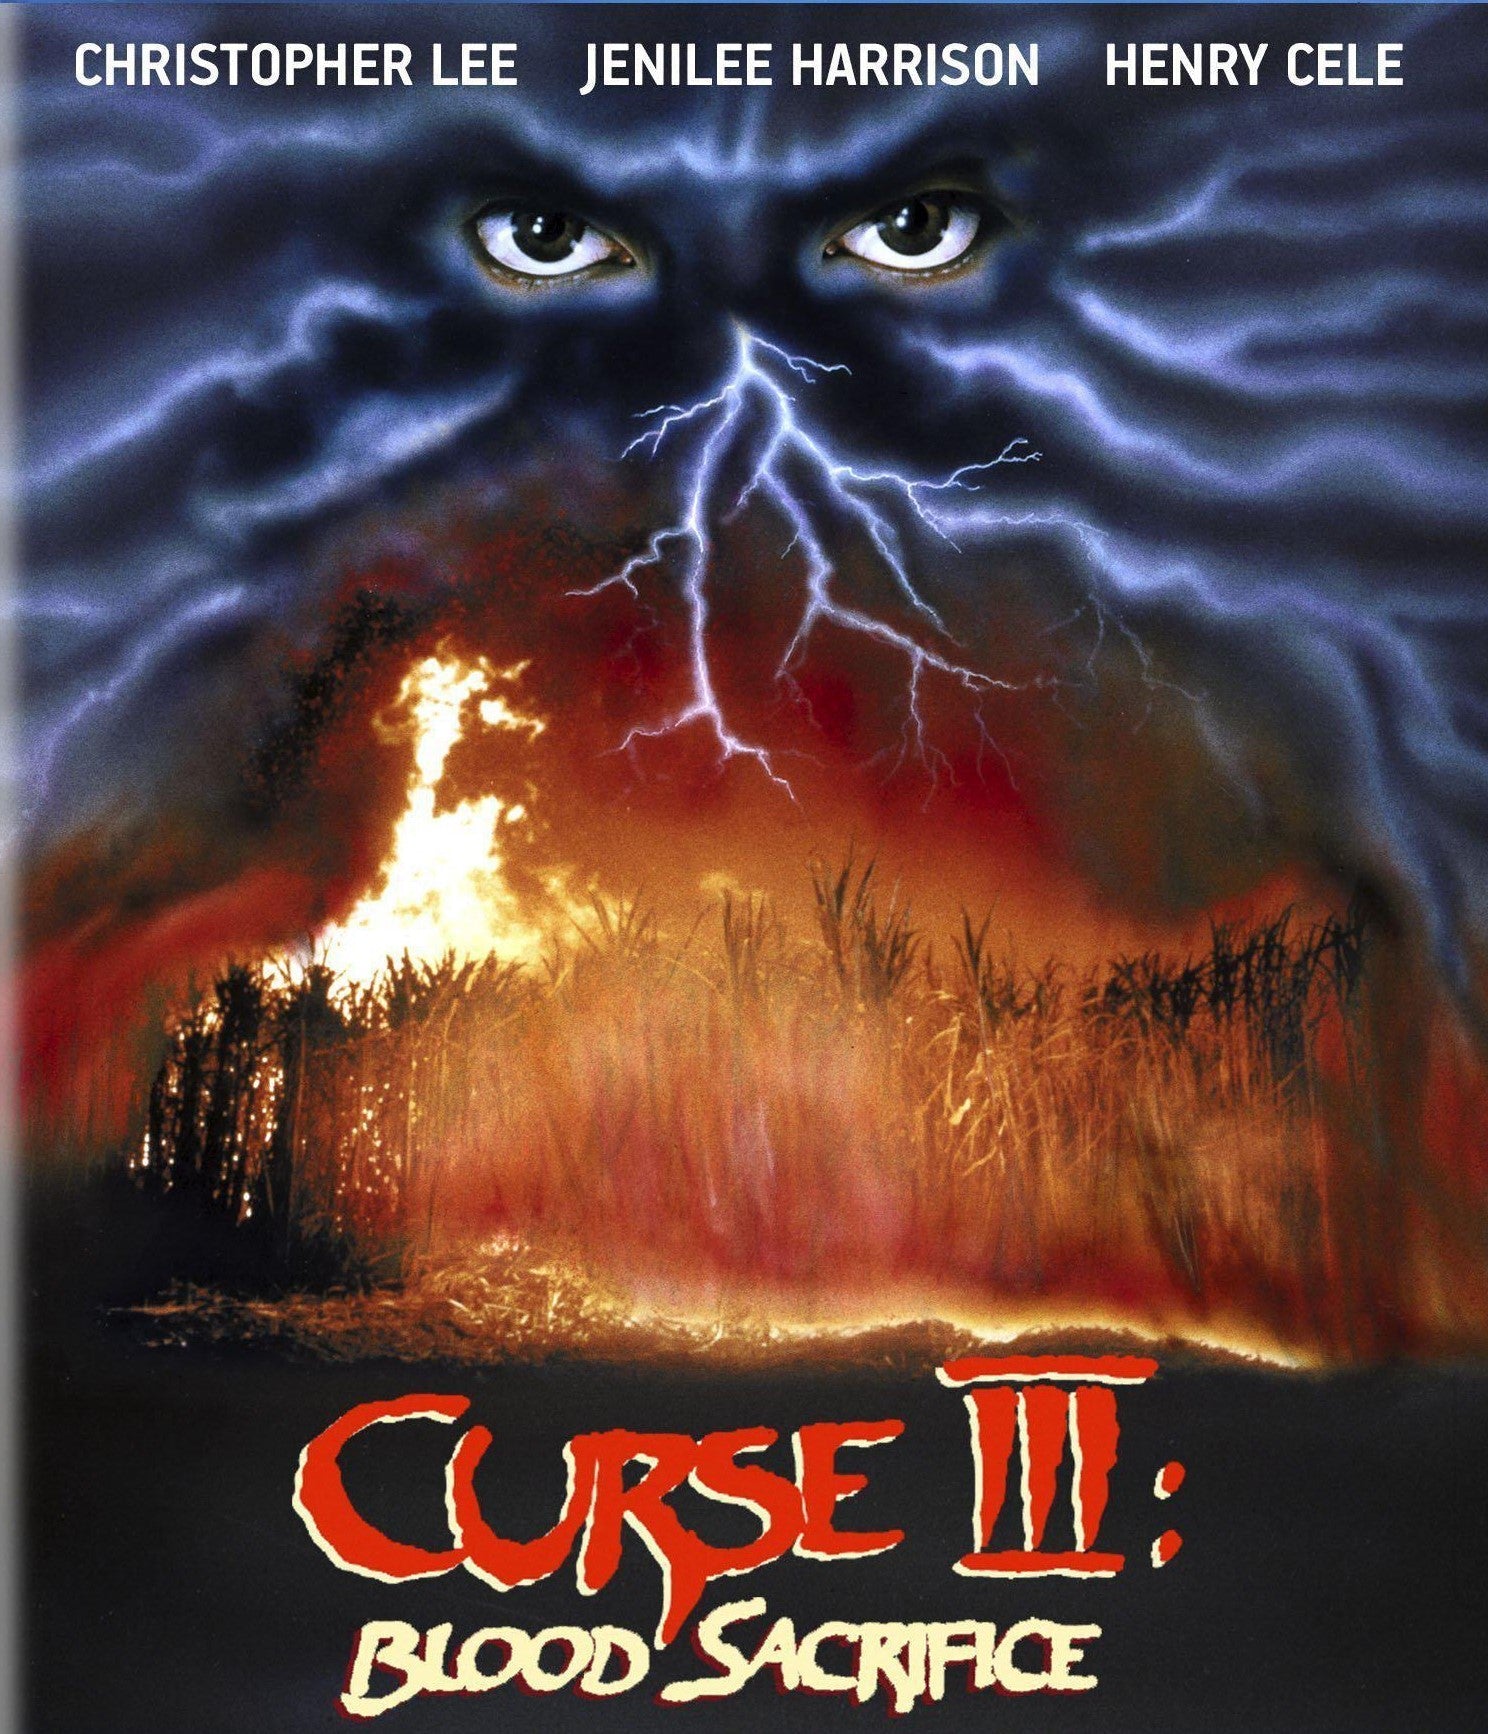 Curse Iii: Blood Sacrifice Blu-Ray Blu-Ray